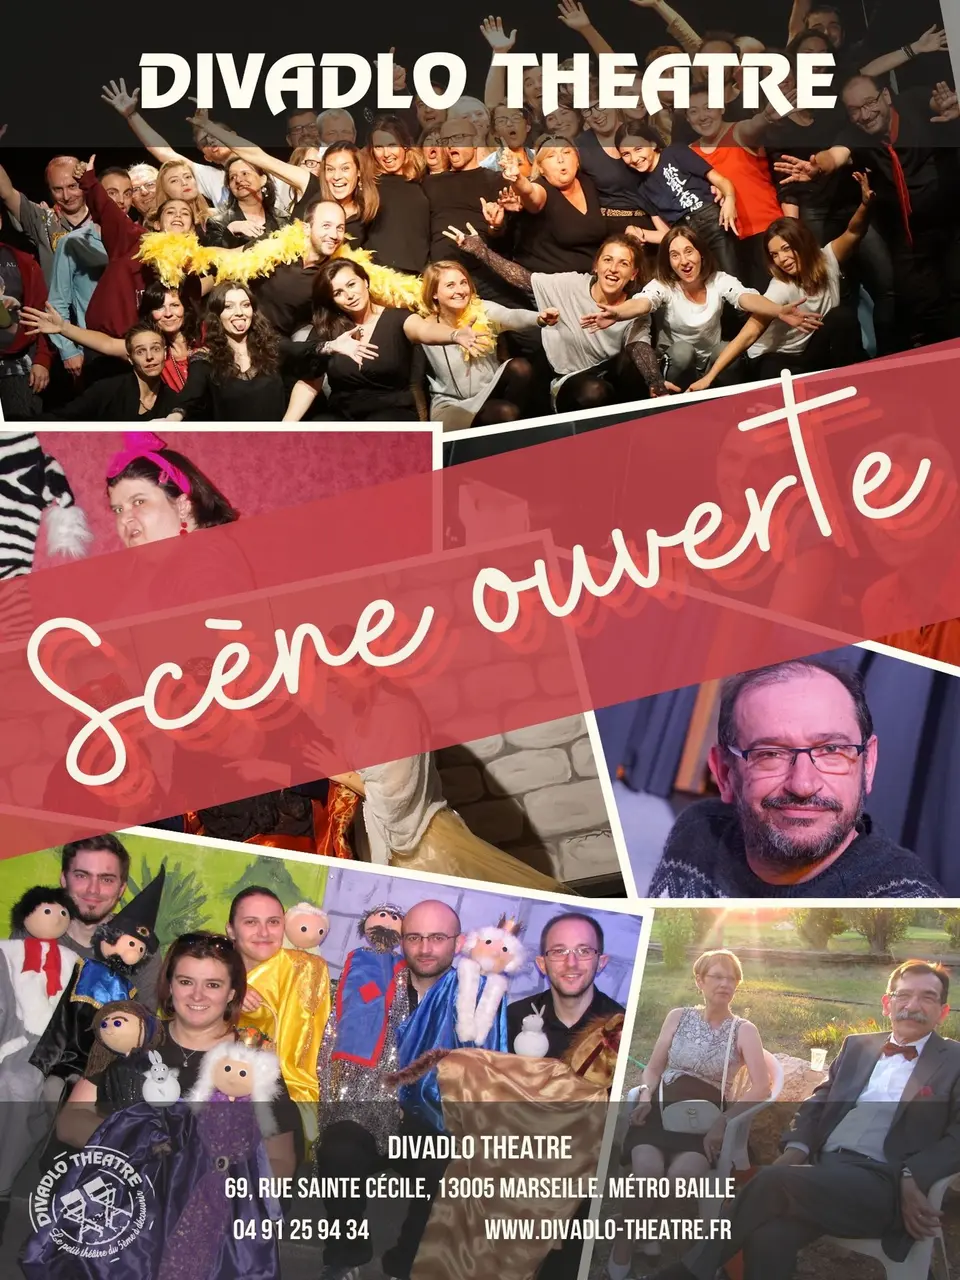 Affiche Spectacle Tout Public  Scène ouverte  - 30 ans du Divadlo